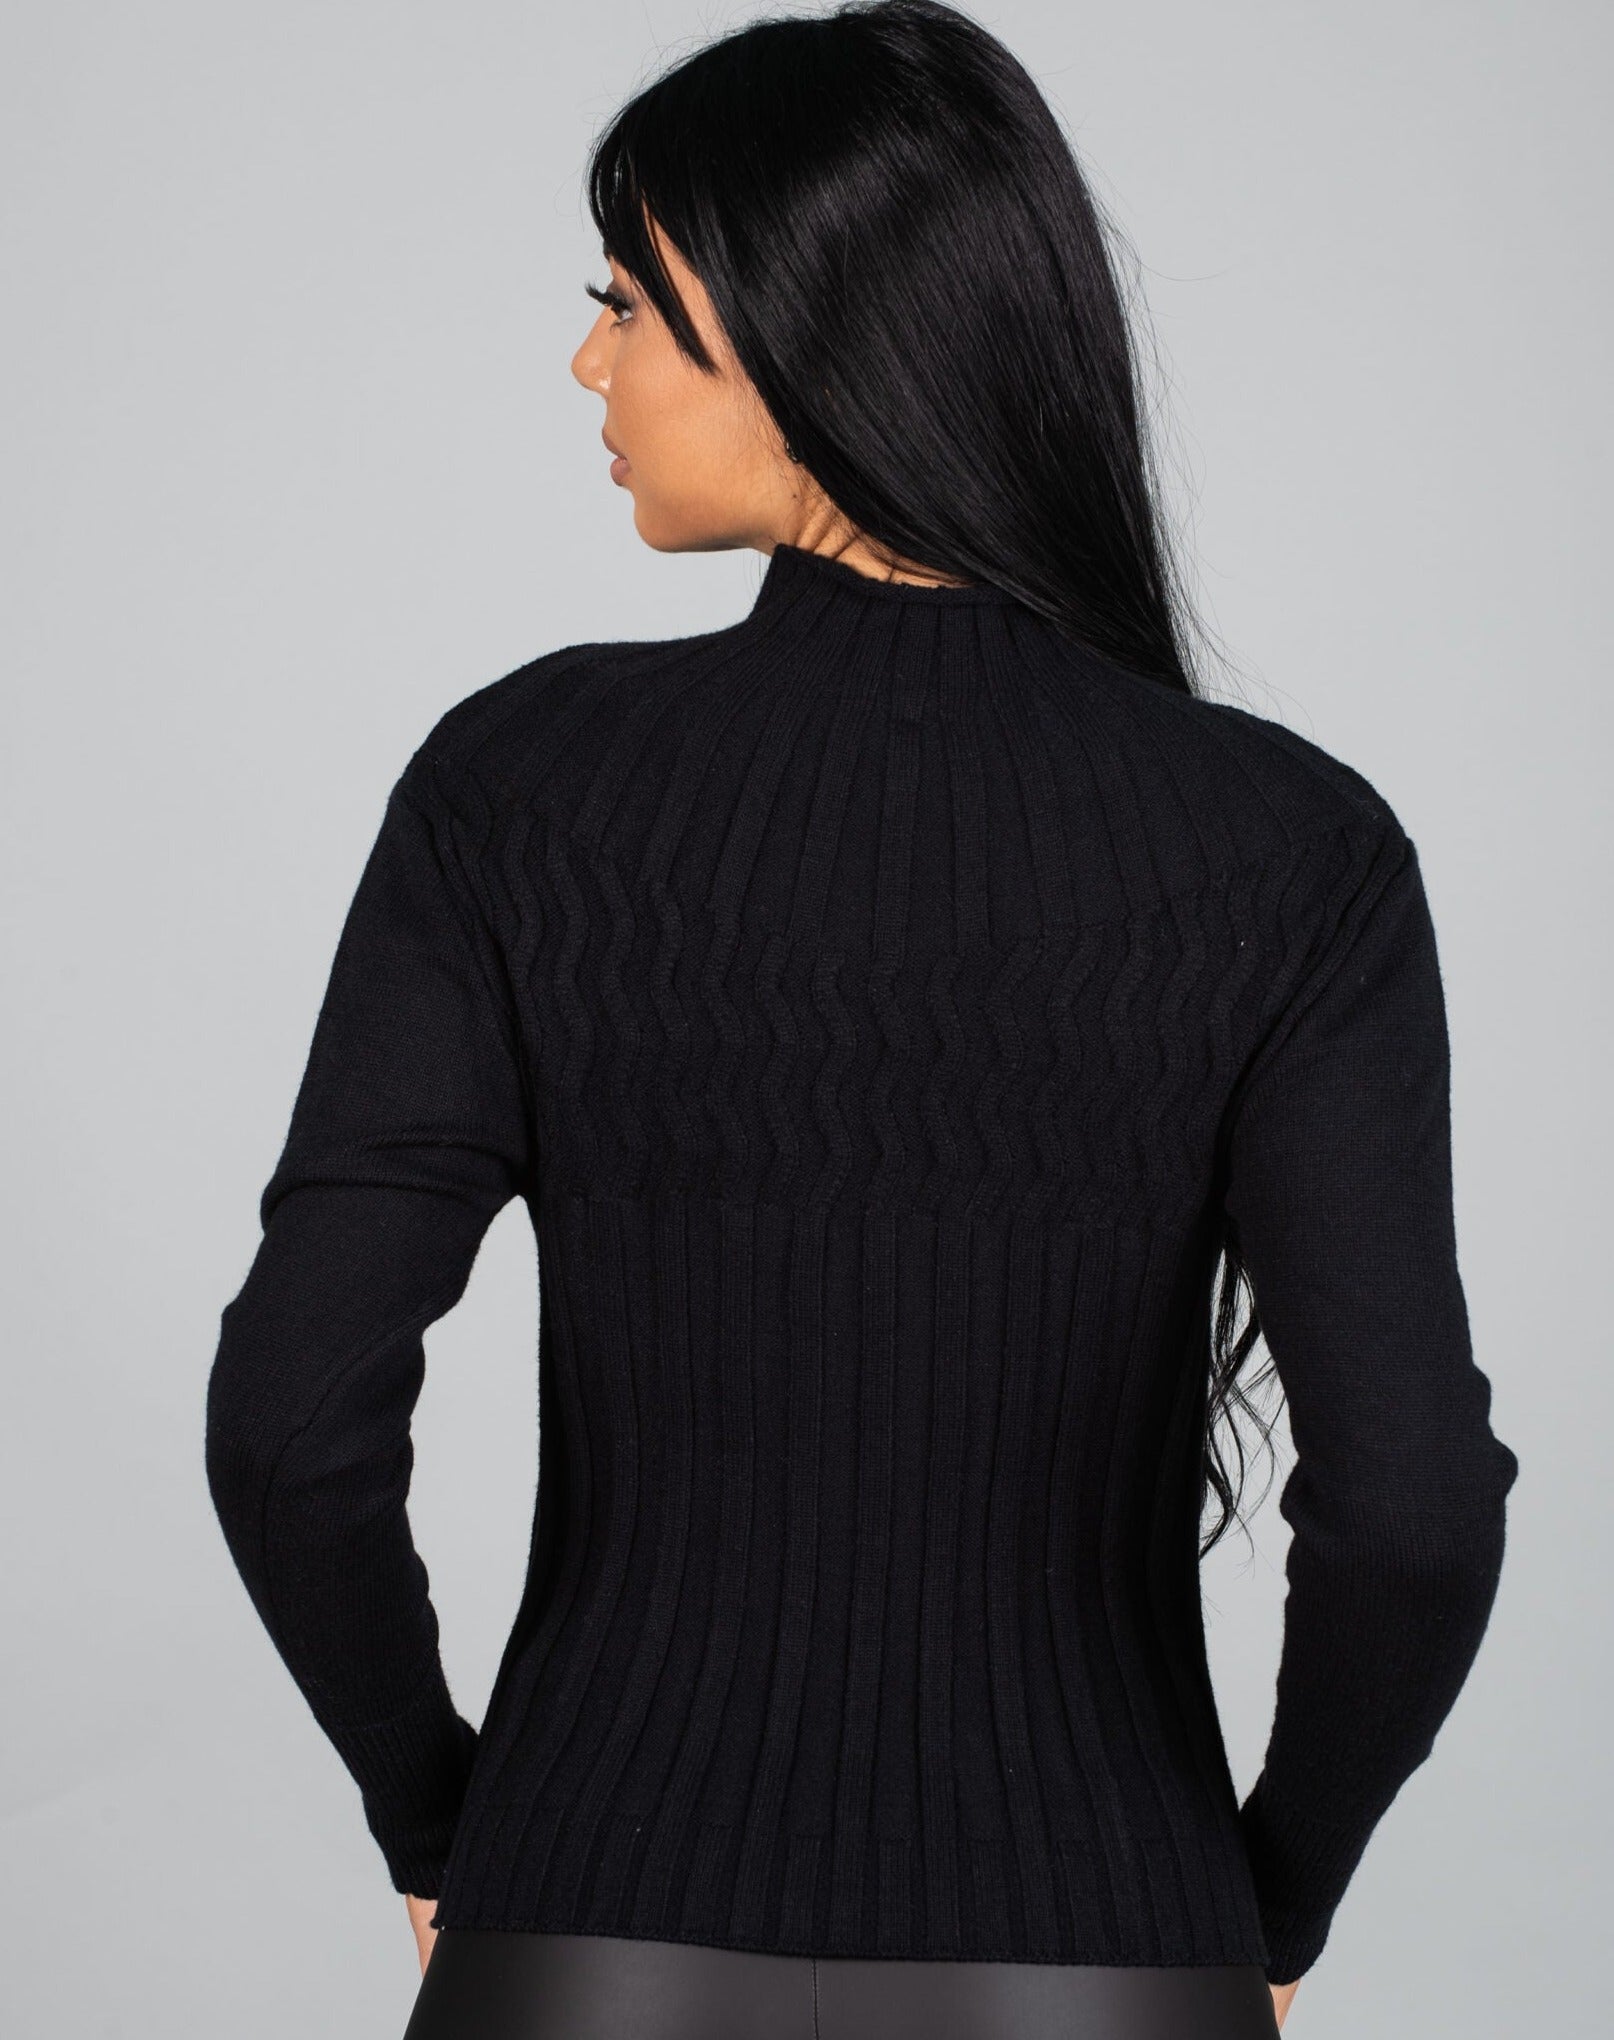 Дамска блуза LORNELA  https://bvseductive.com/products/дамска-блуза-lornela-1  60 % вискоза 40 % нилон топла дамска блуза в черен цвят модел по тялото с&nbsp; поло яка стил и топлина с блуза&nbsp;LORNELA